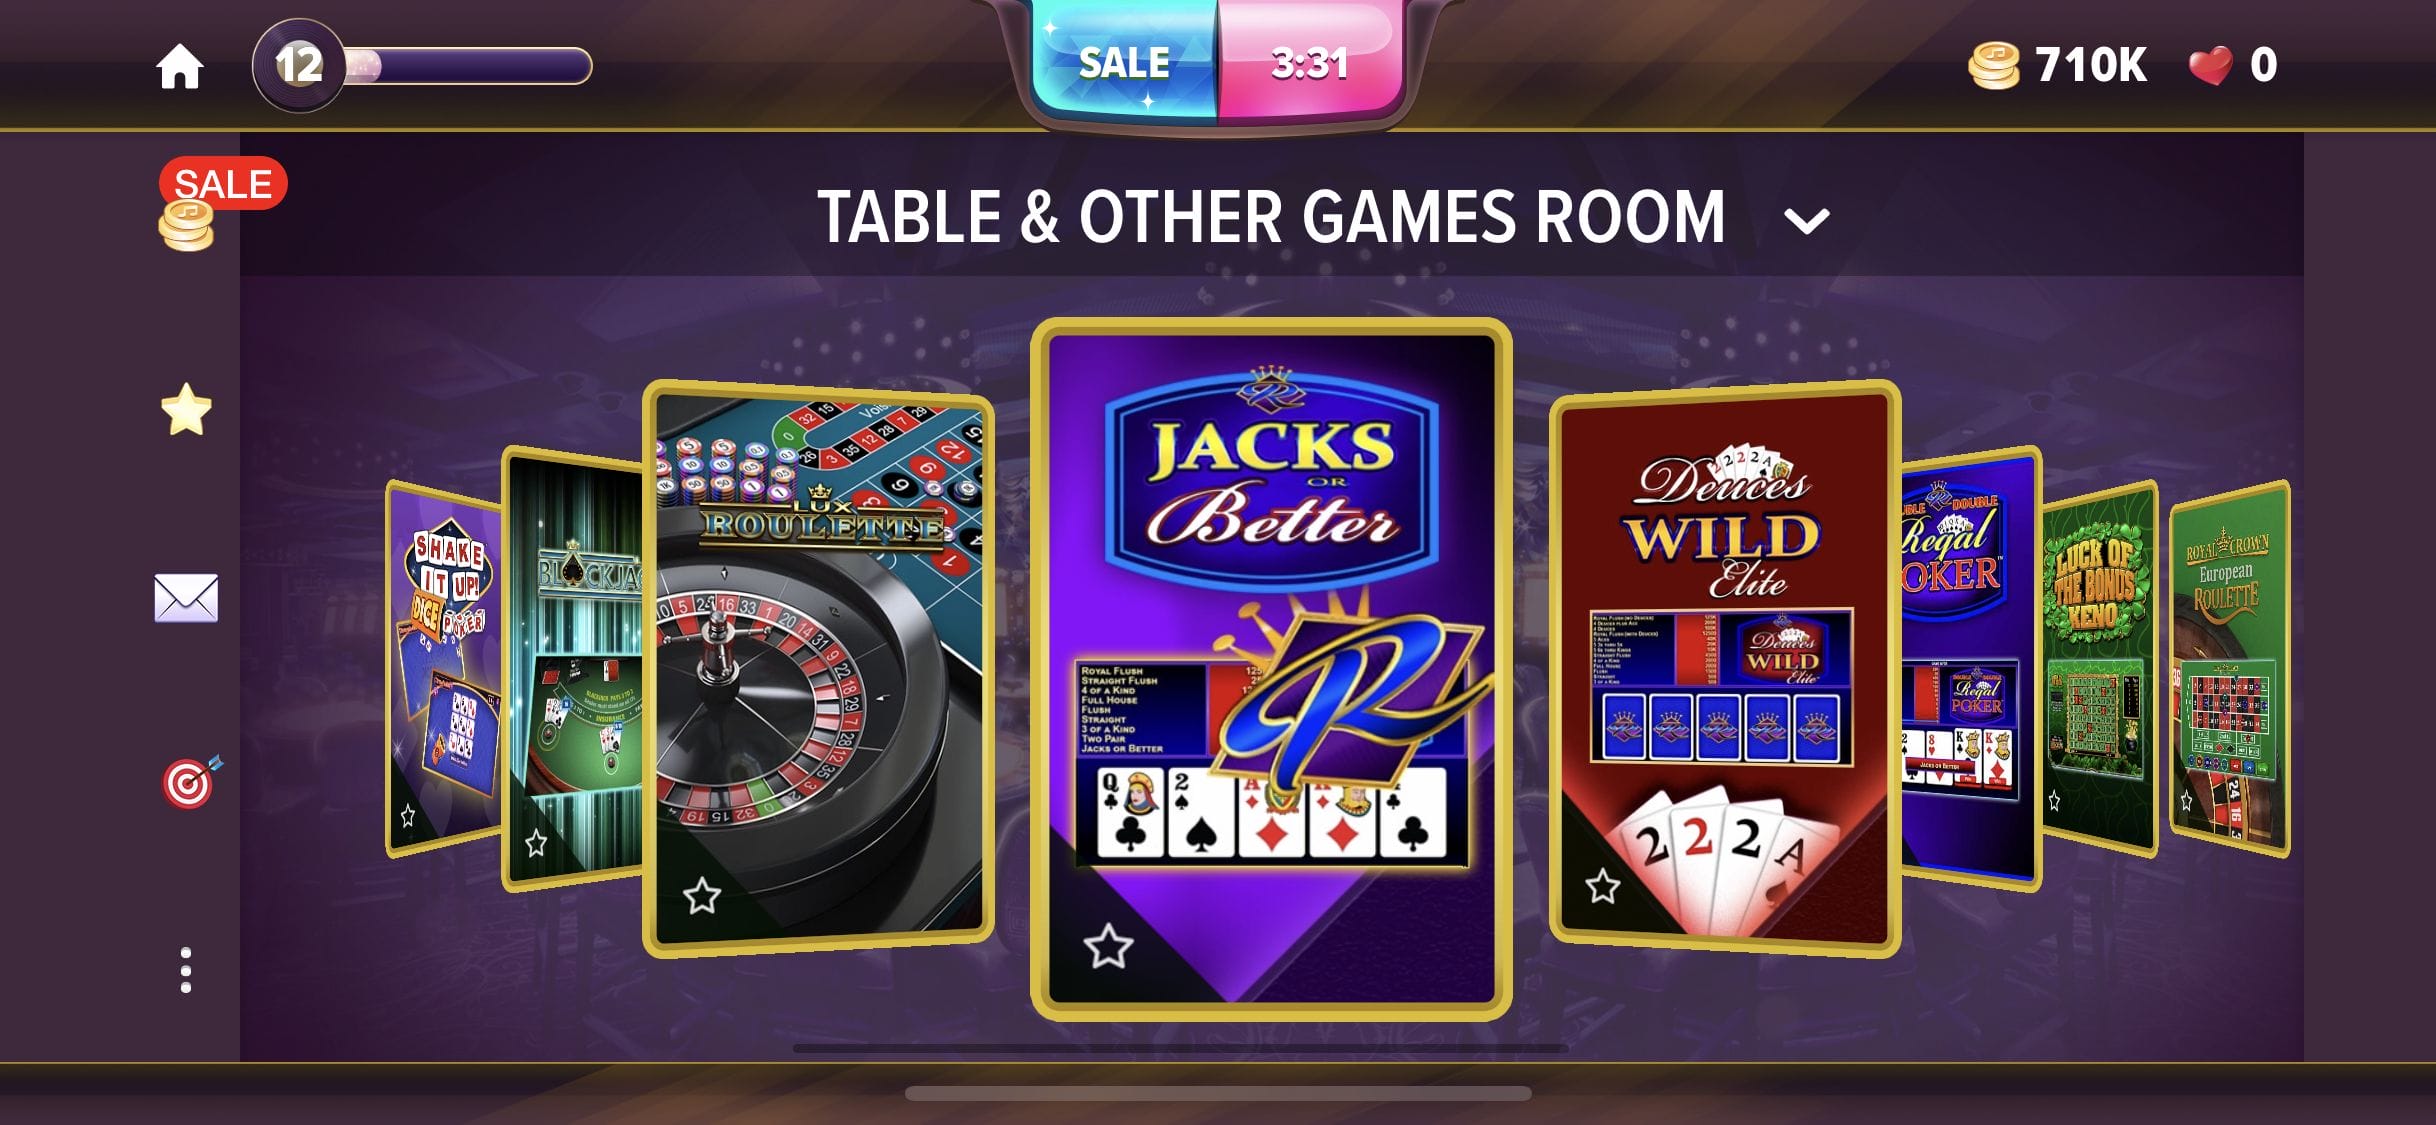 hard rock social casino questions